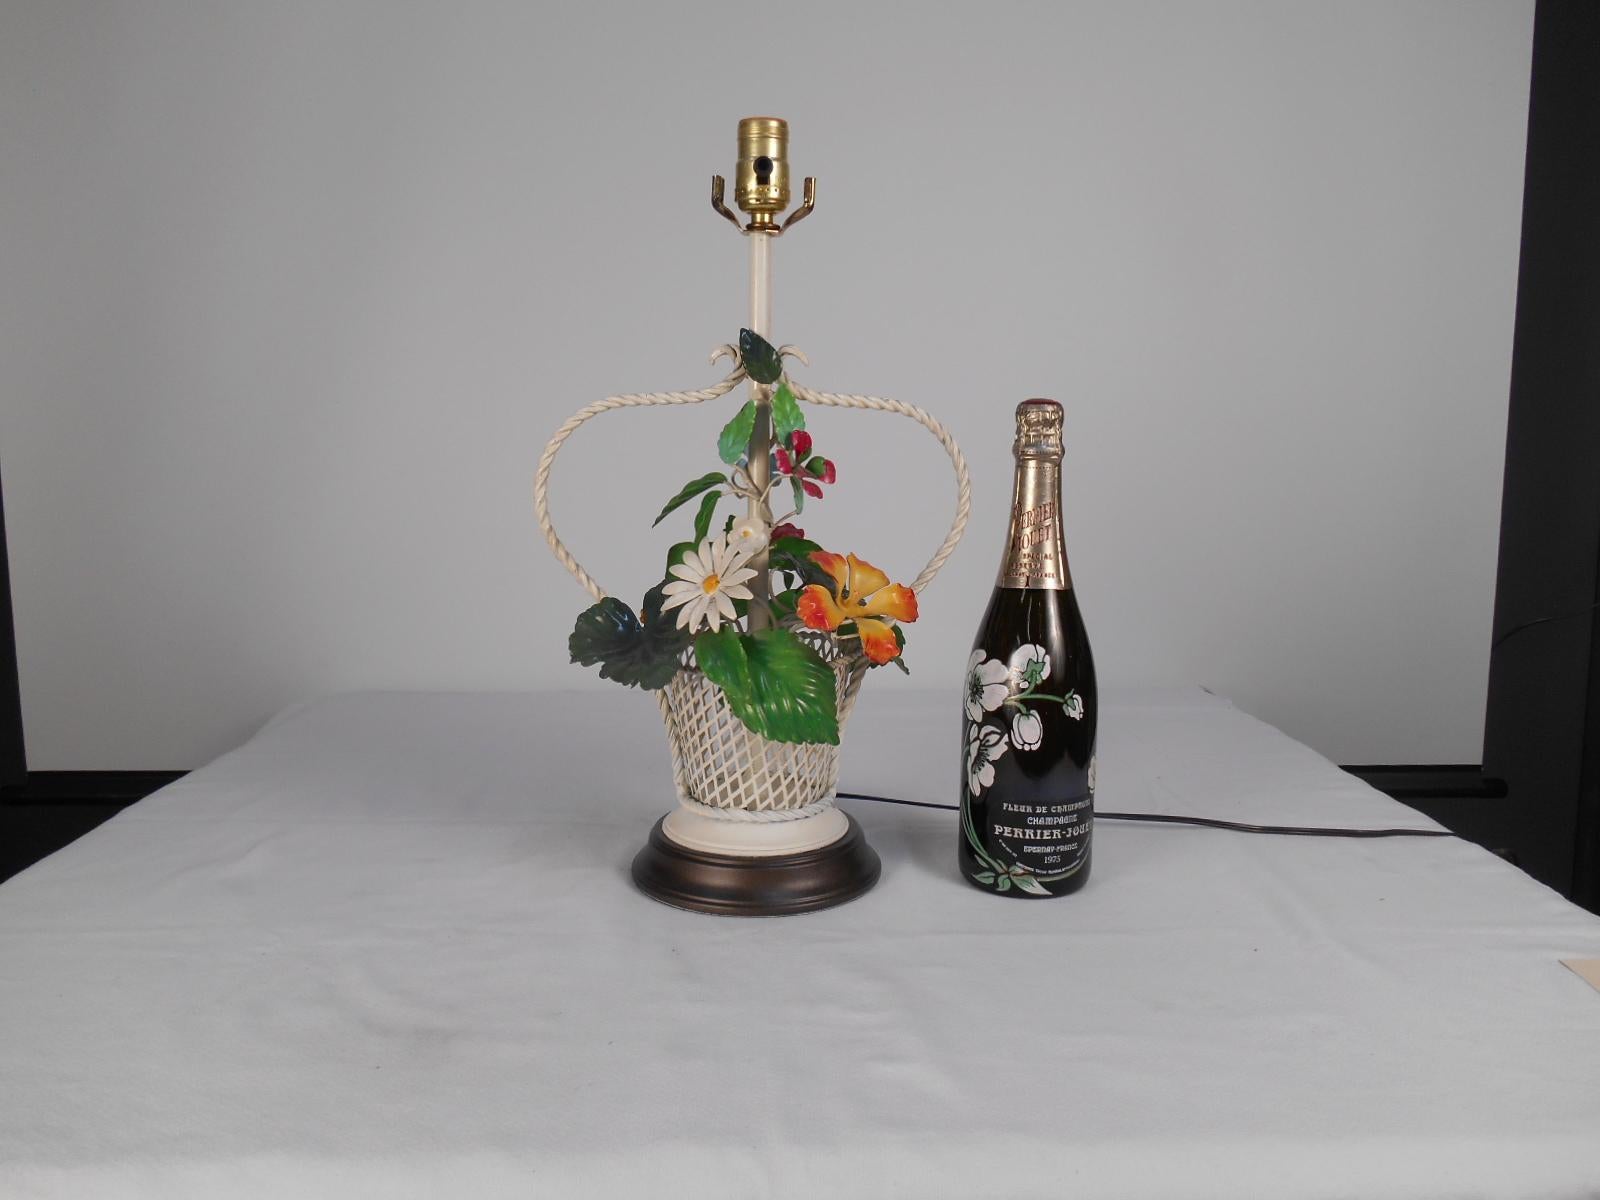 Une charmante lampe de table en forme de panier floral tolé coloré. Fabriqué dans les années 1960. La corbeille peinte en blanc met en valeur les verts, les oranges, les rouges et les jaunes du bouquet de fleurs en tole. Nous avons rafraîchi la base